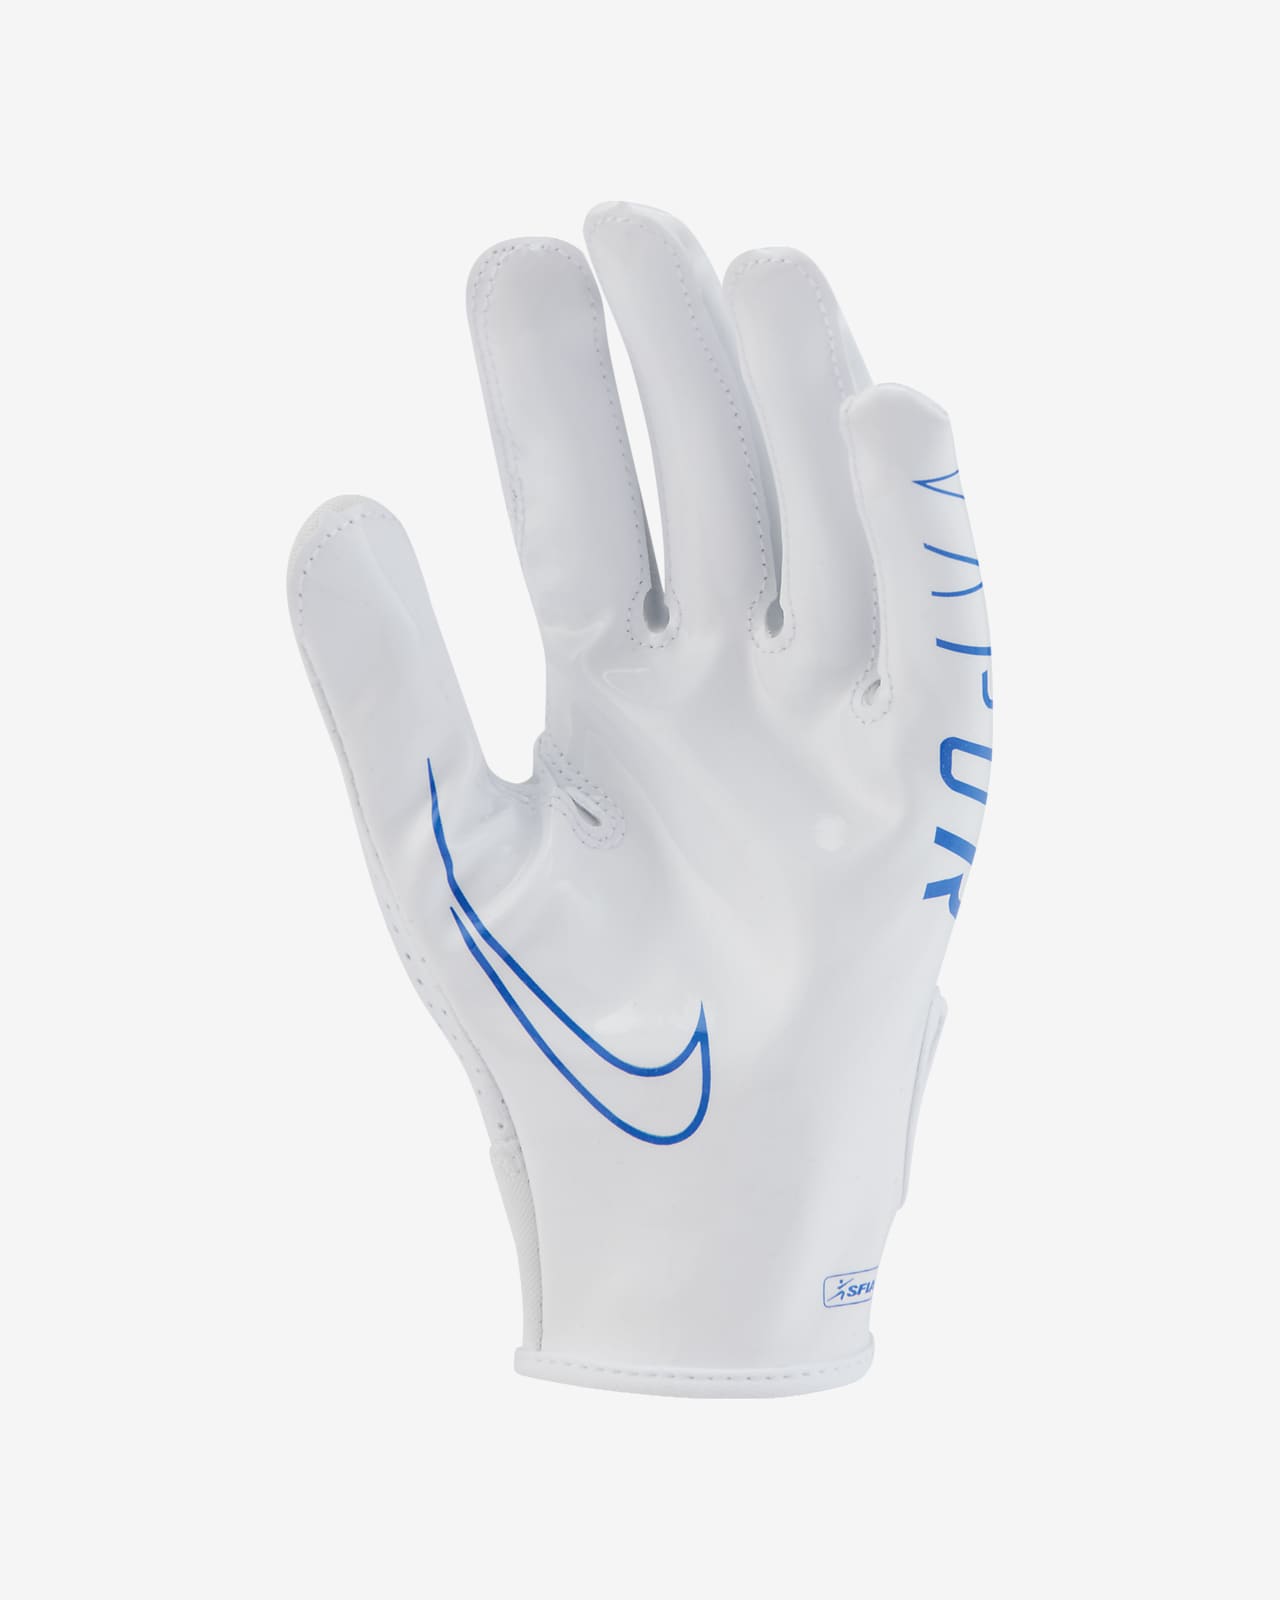 nike vapor jet 6.0 football receiver gloves